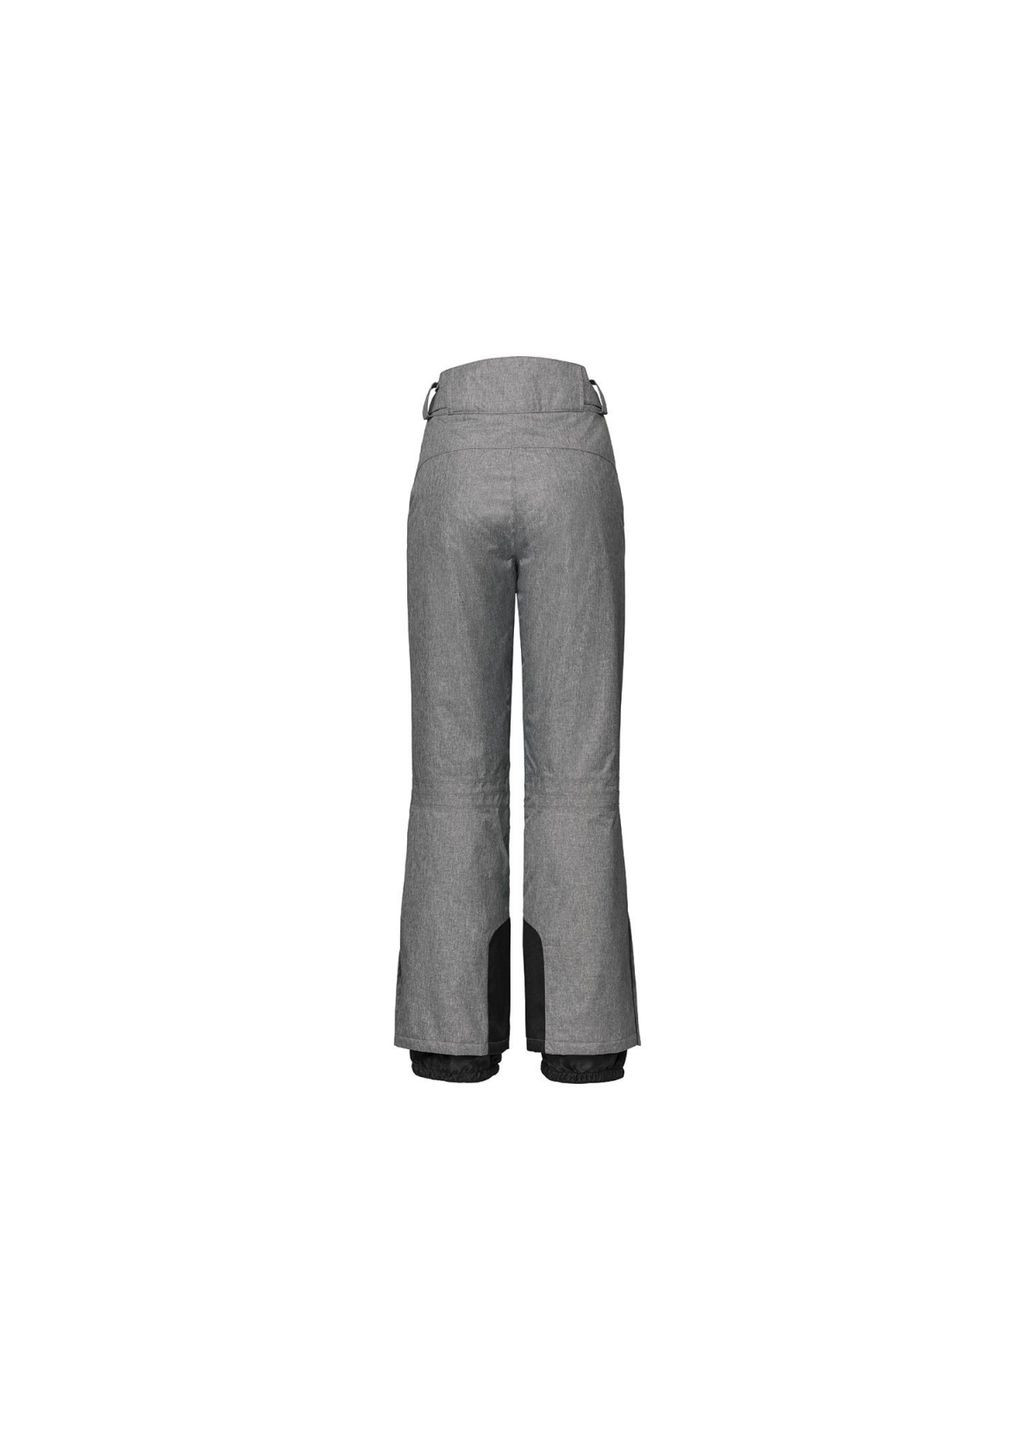 Горнолыжные брюки мембранные (3000мм) для женщины 314058 38(S) Crivit (277159471)